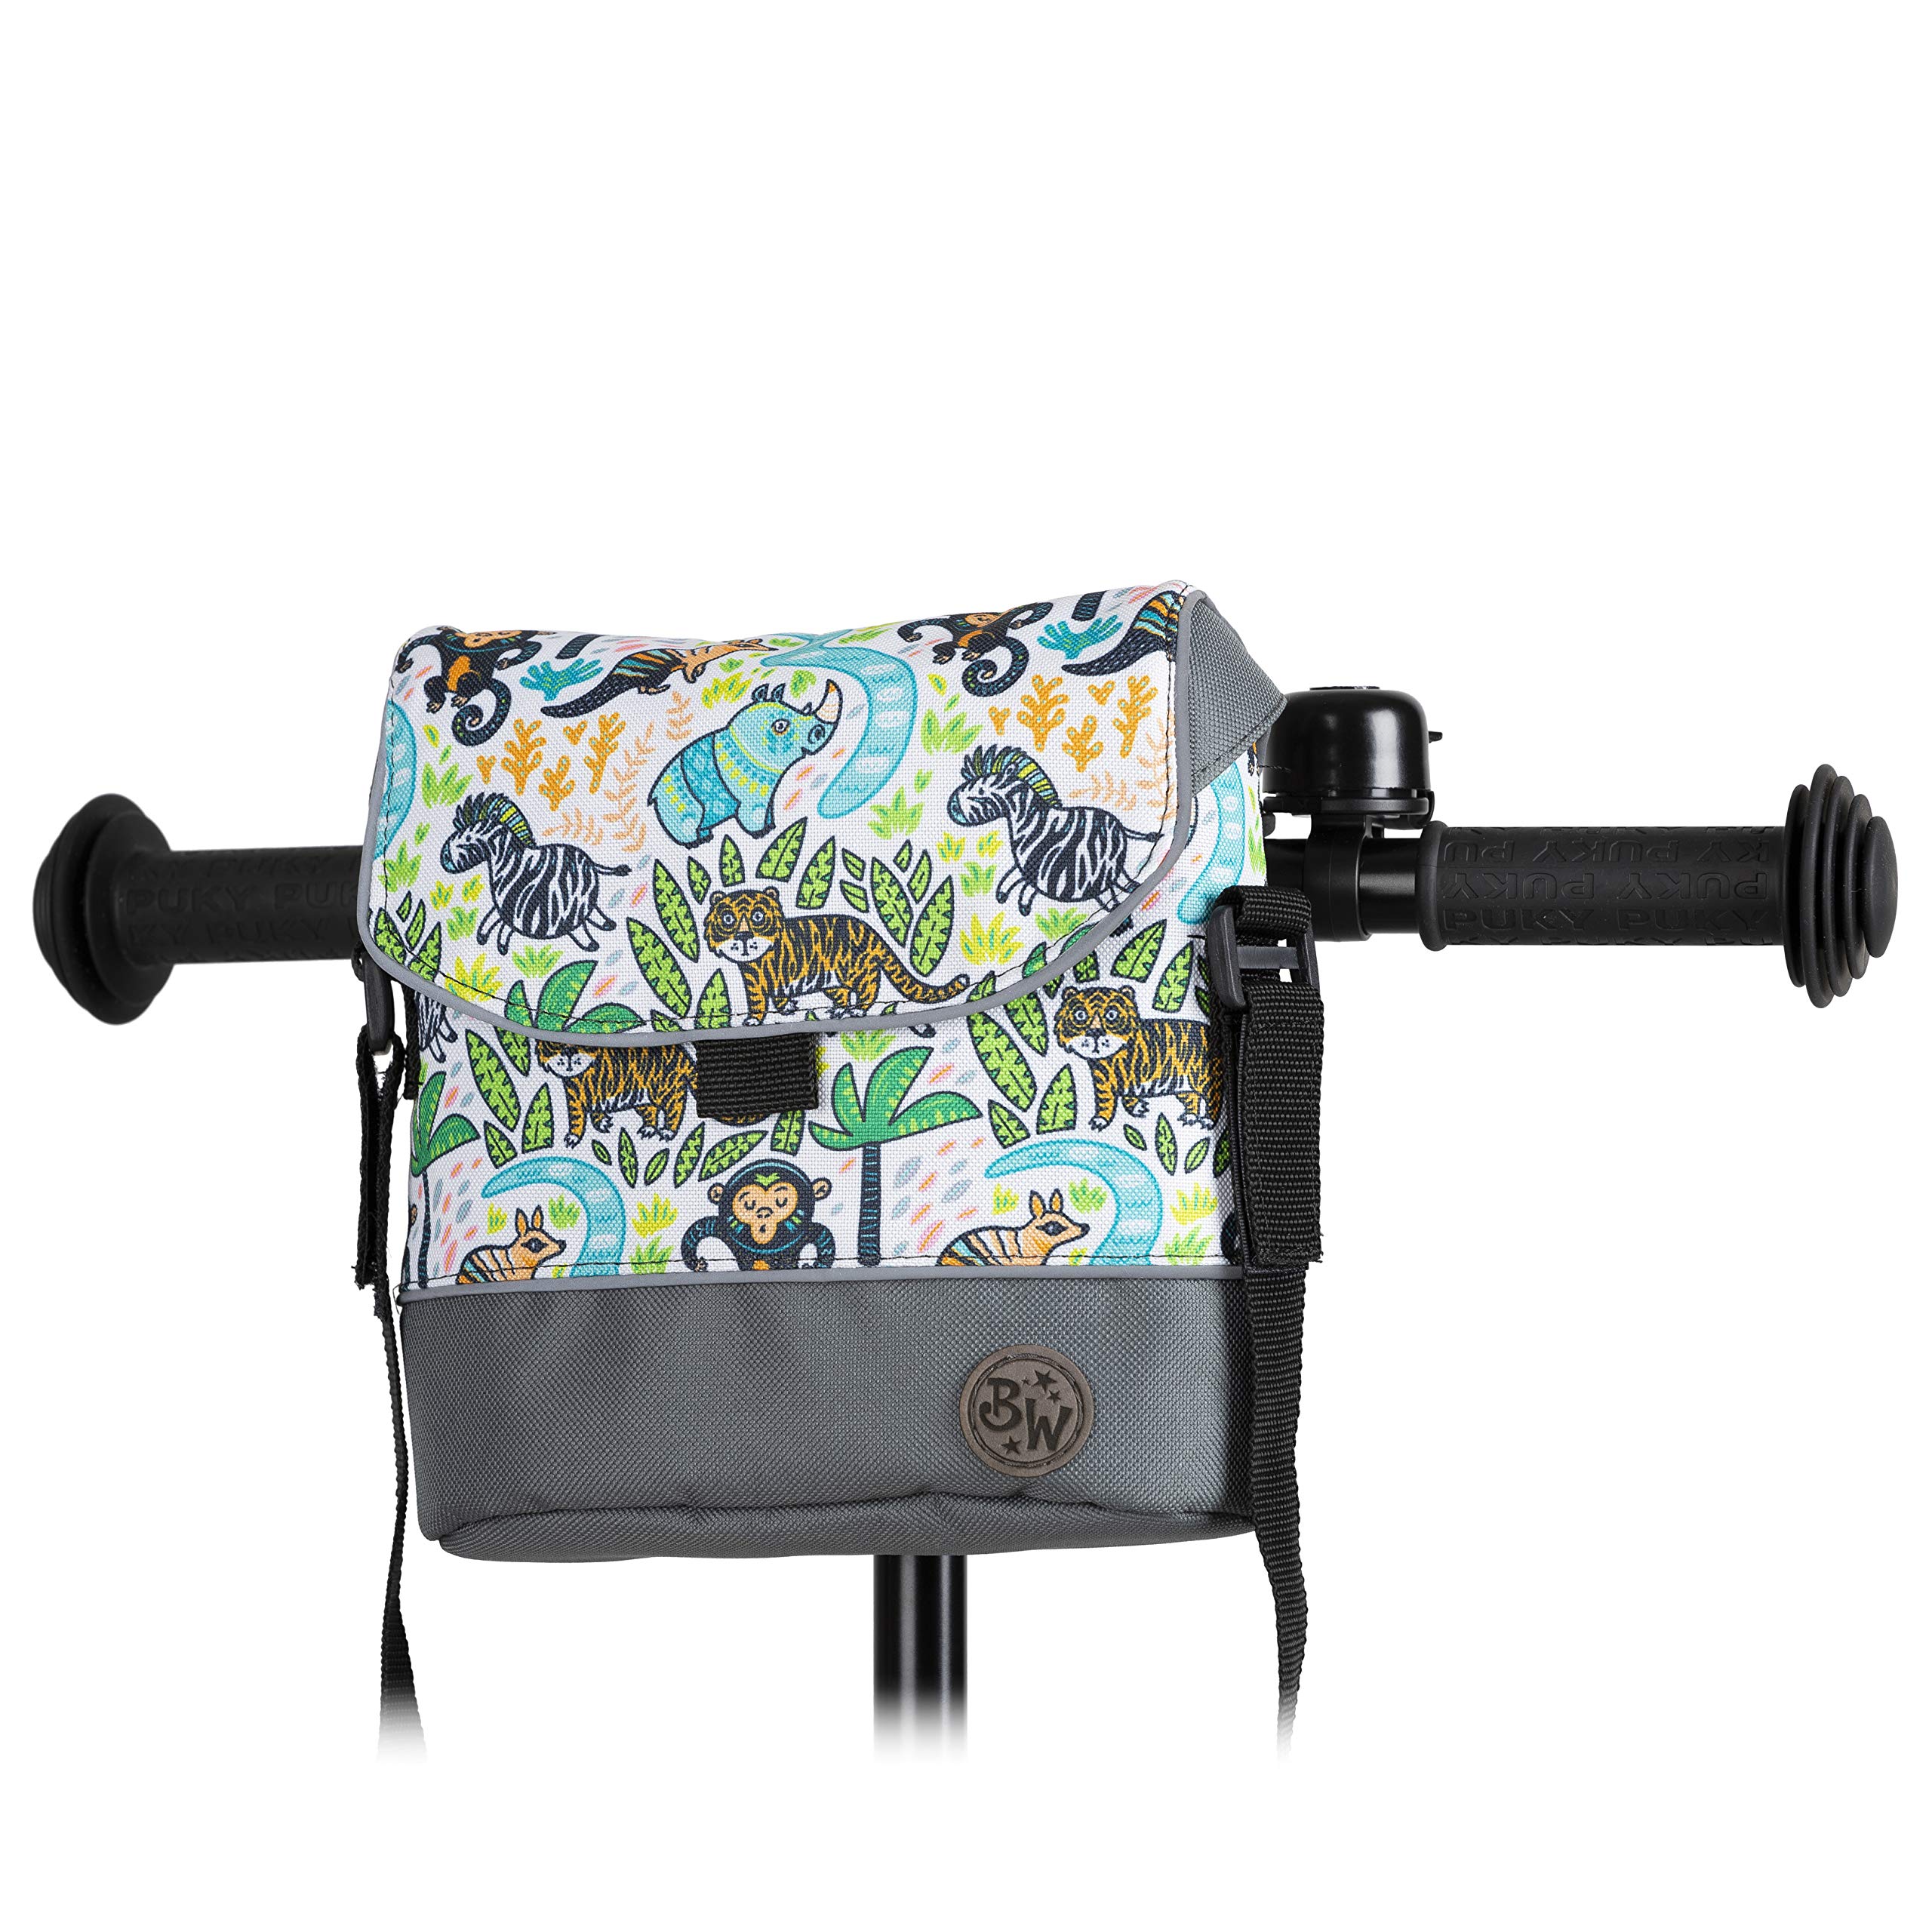 BAMBINIWELT Lenkertasche Tasche kompatibel mit Puky mit Woom Laufrad Räder Roller Fahrrad Fahrradtasche für Kinder wasserabweisend mit Schultergurt (Modell 21)